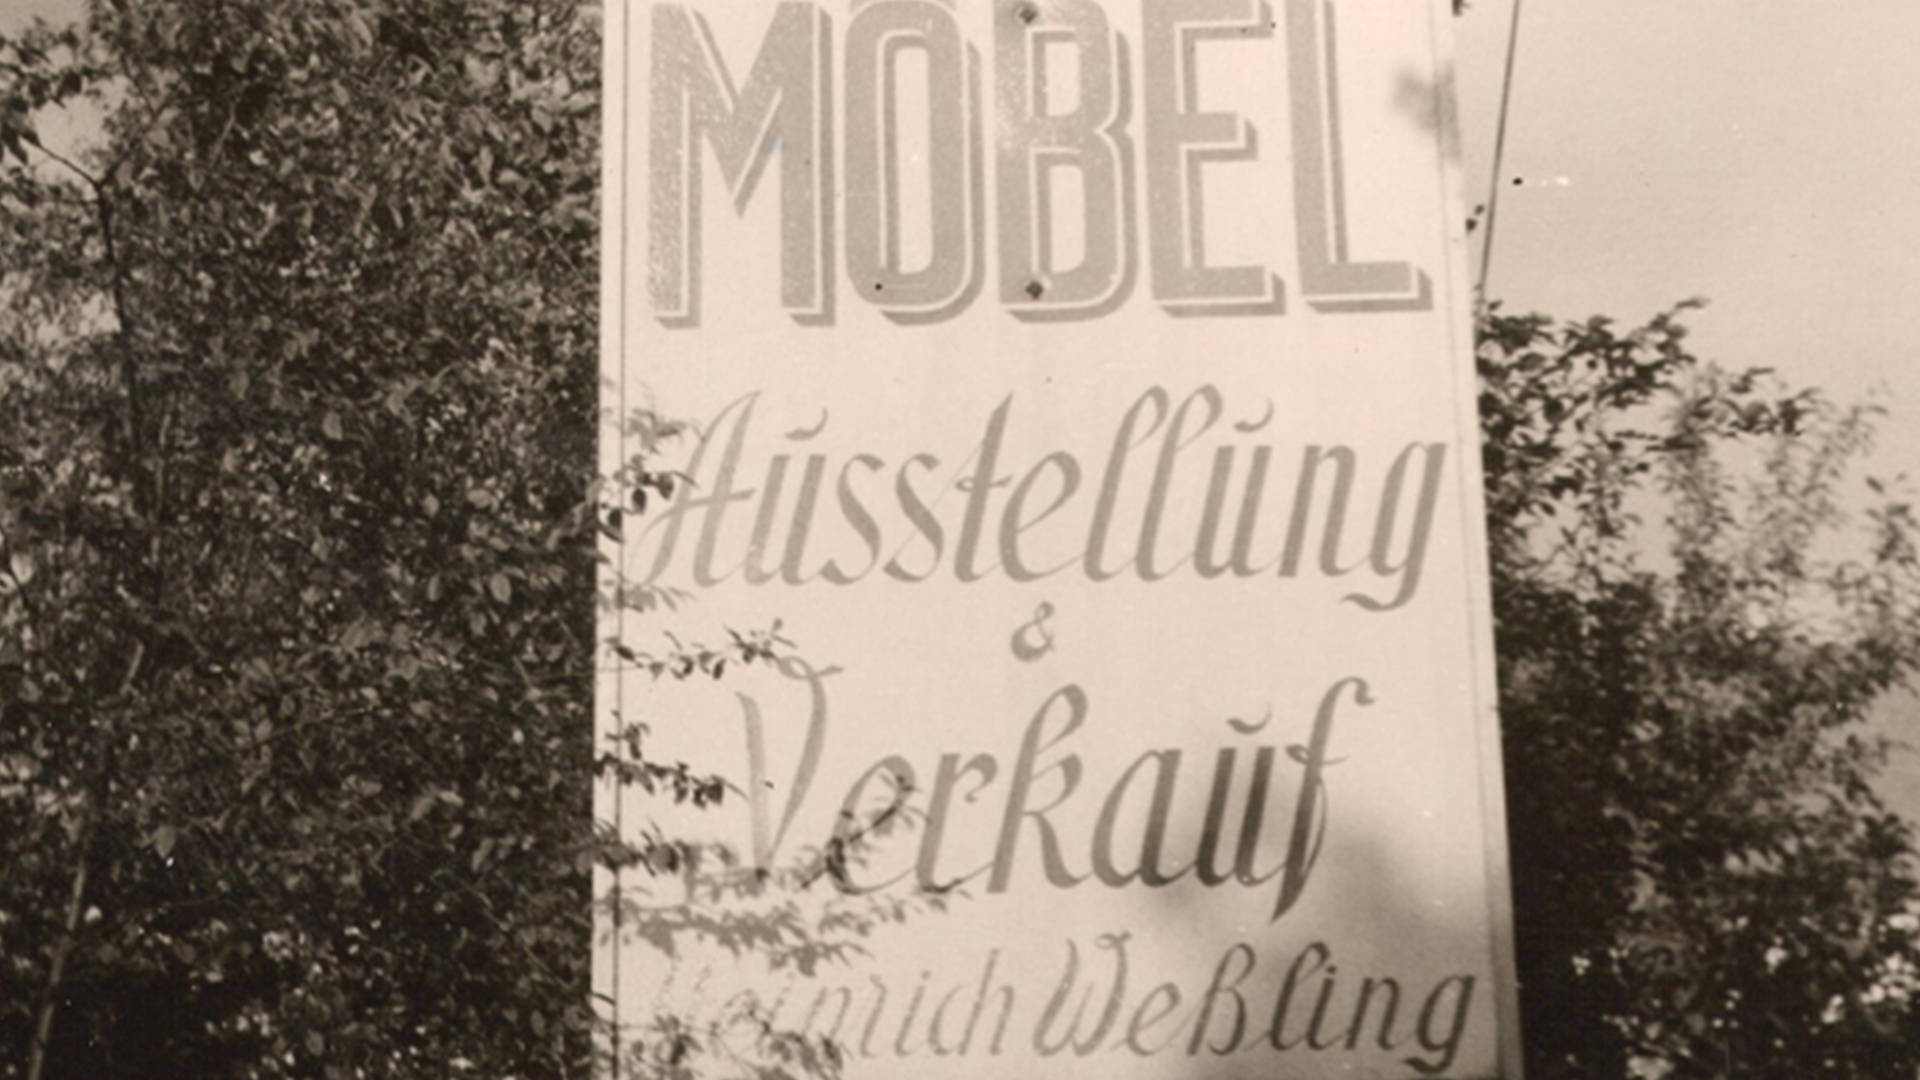 TIschlerei Wessling 1957